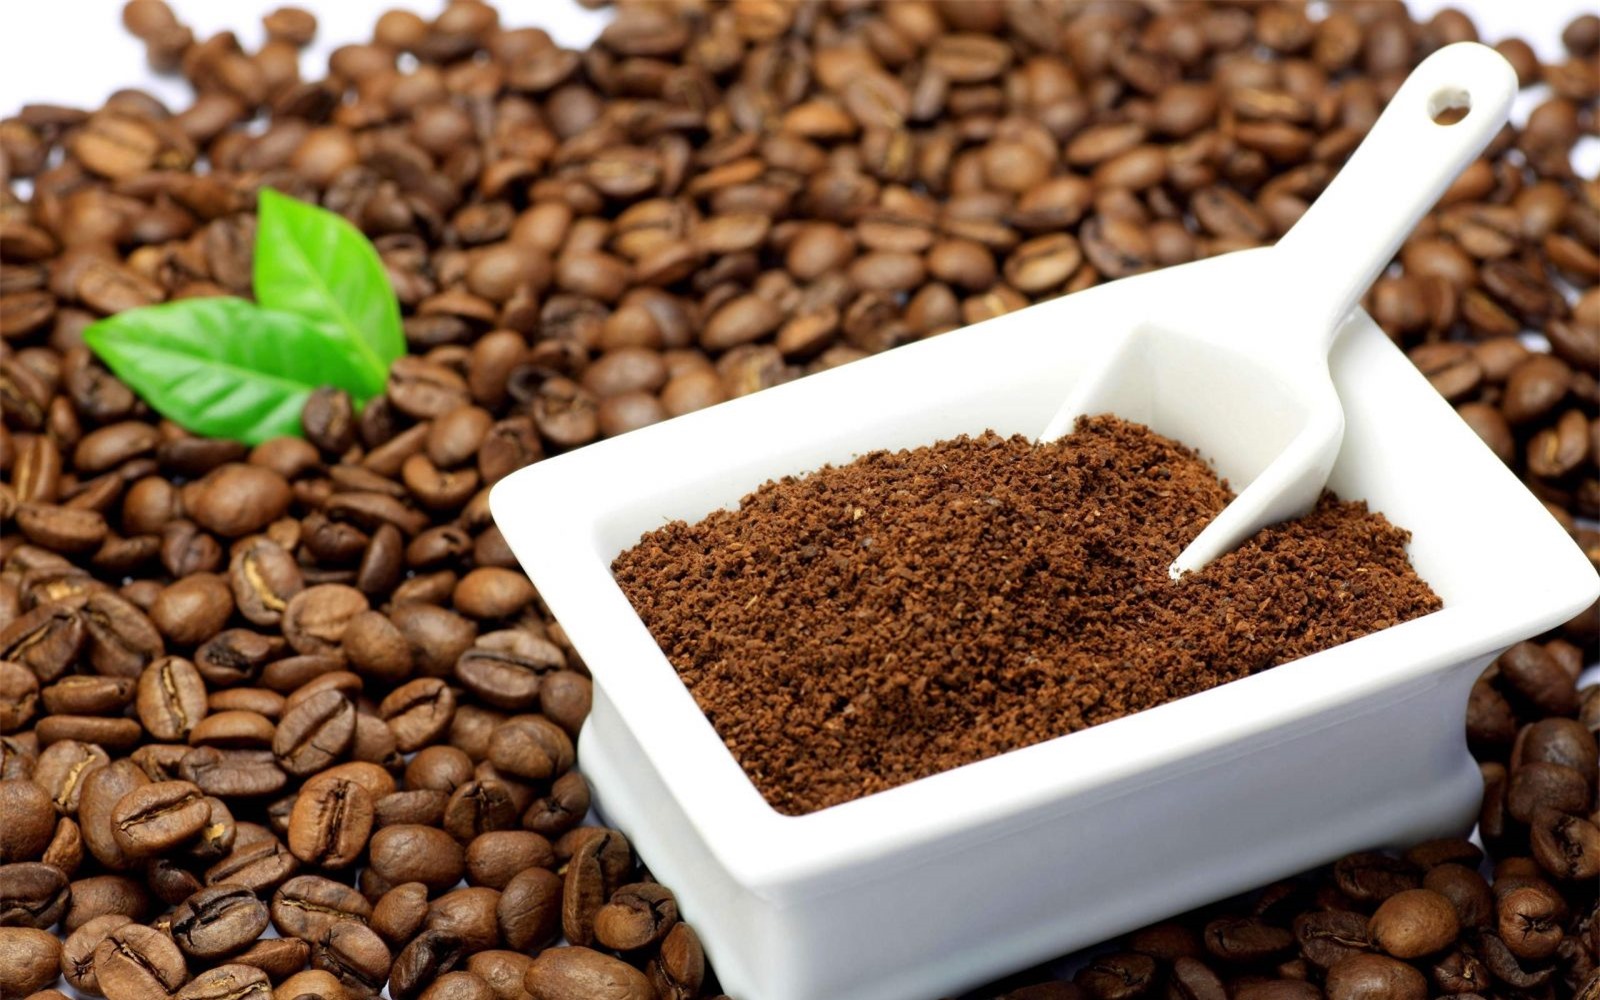 Bã cà phê với dưỡng chất chống oxi hóa dồi dào được sử dụng để làm trắng da hiệu quả tại nhà